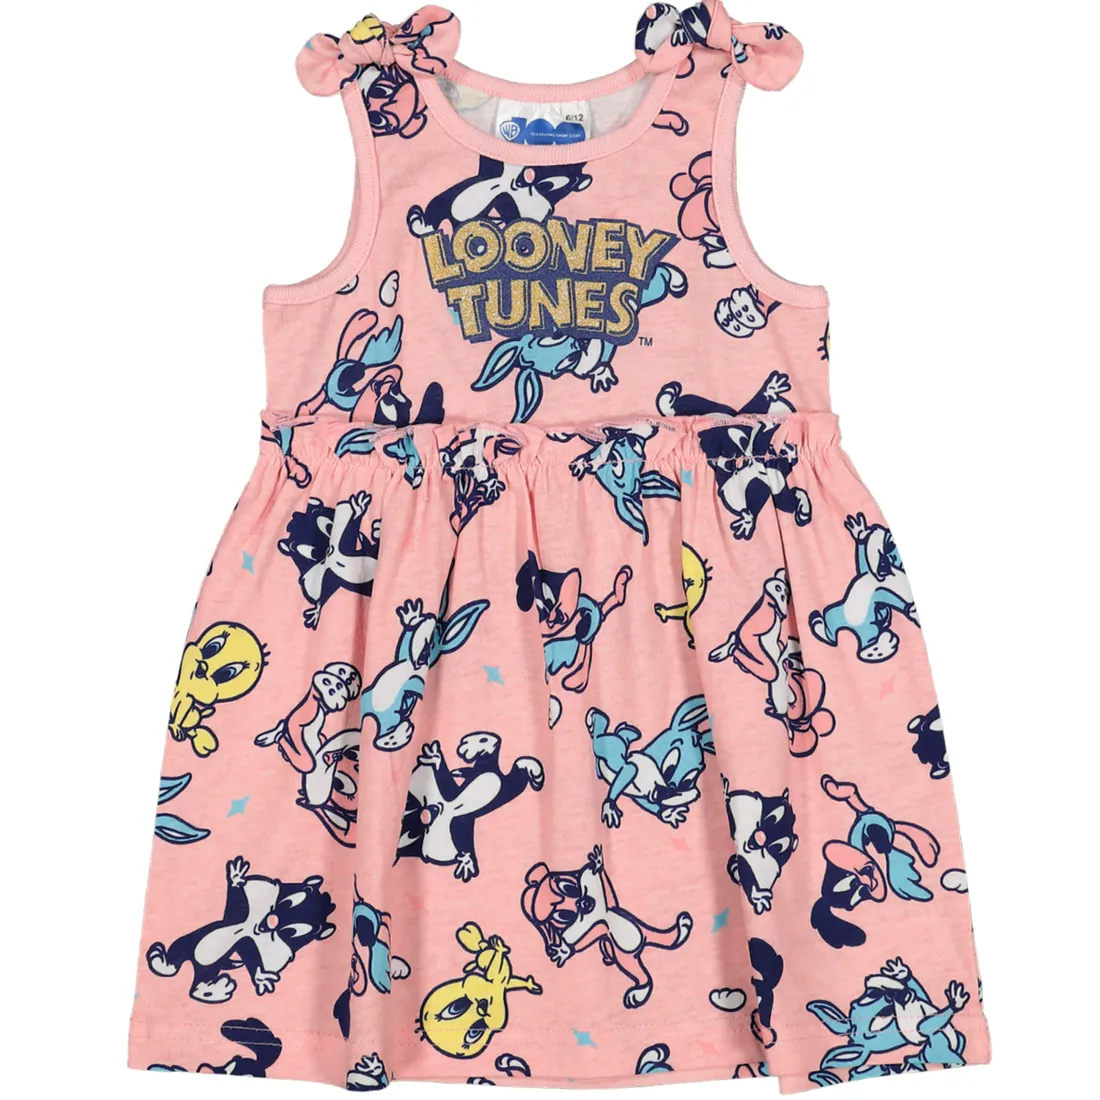 Looney Toons Dress | Babies & Kids | PEP